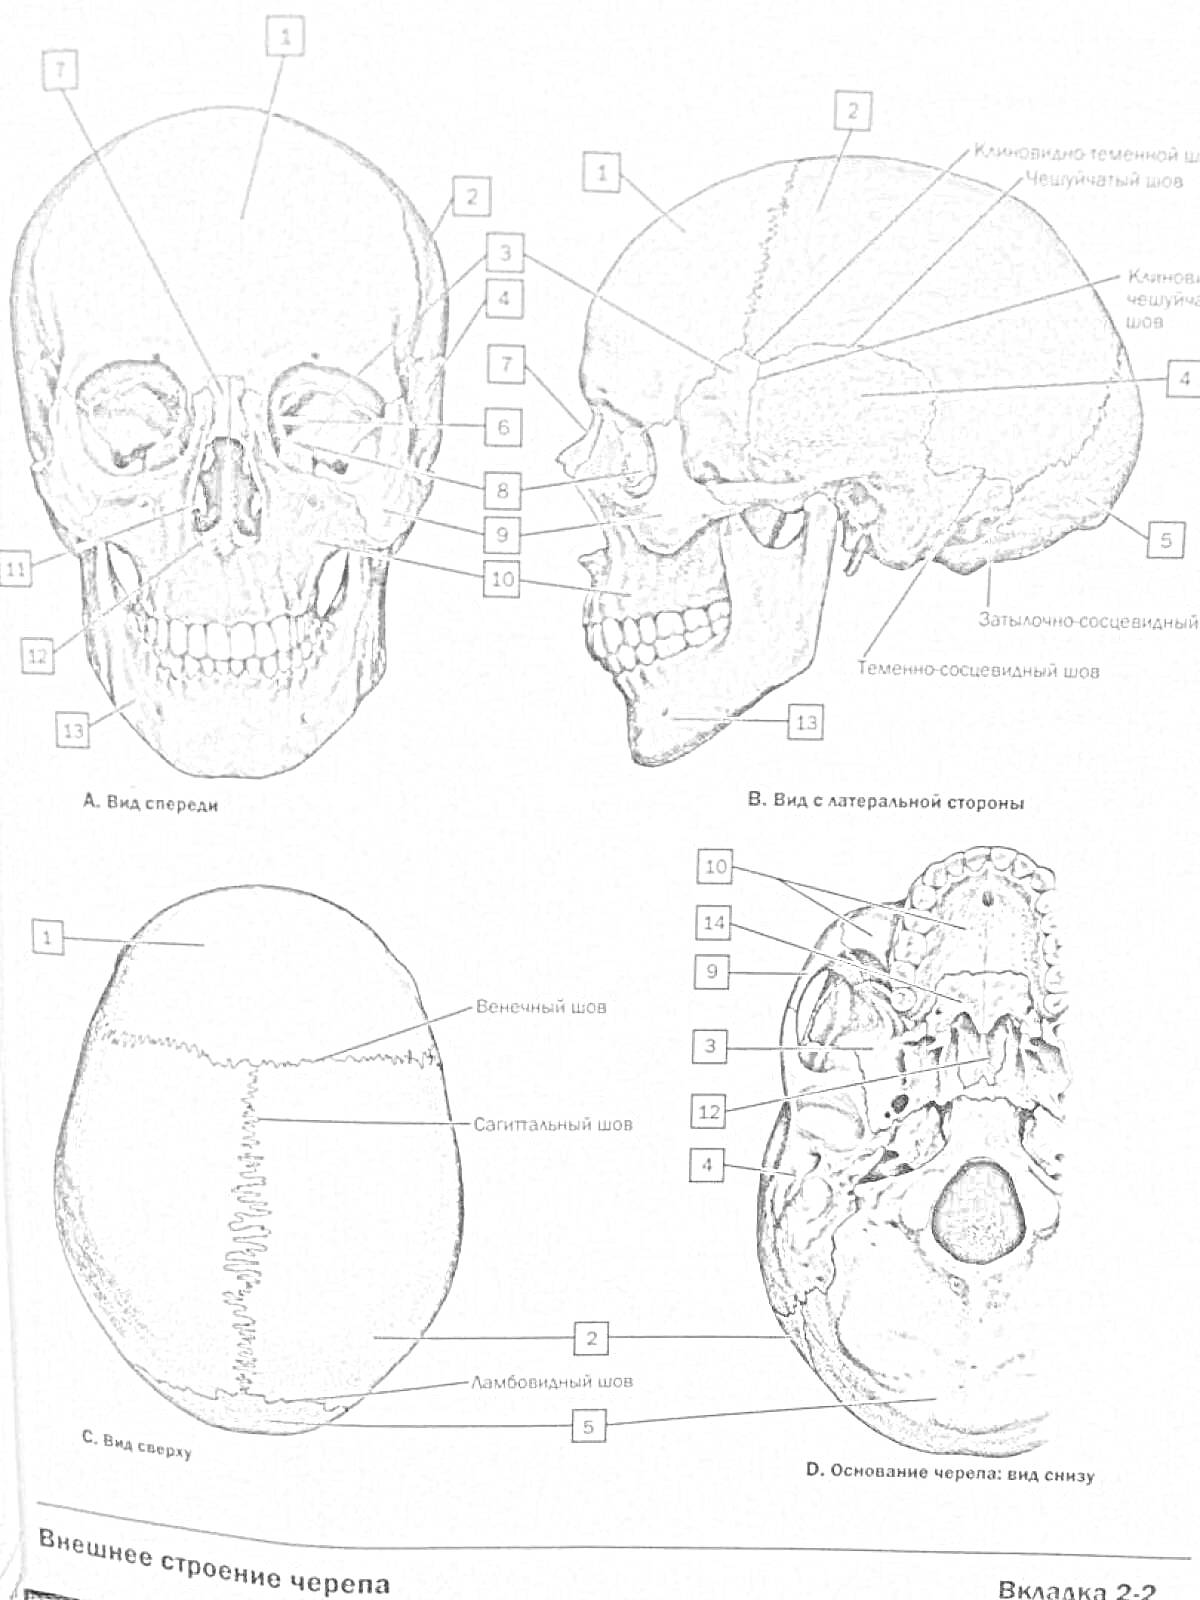 Раскраска Череп человека с разными видами и отмеченными элементами (вид спереди, вид слева, вид сверху, вид снизу)